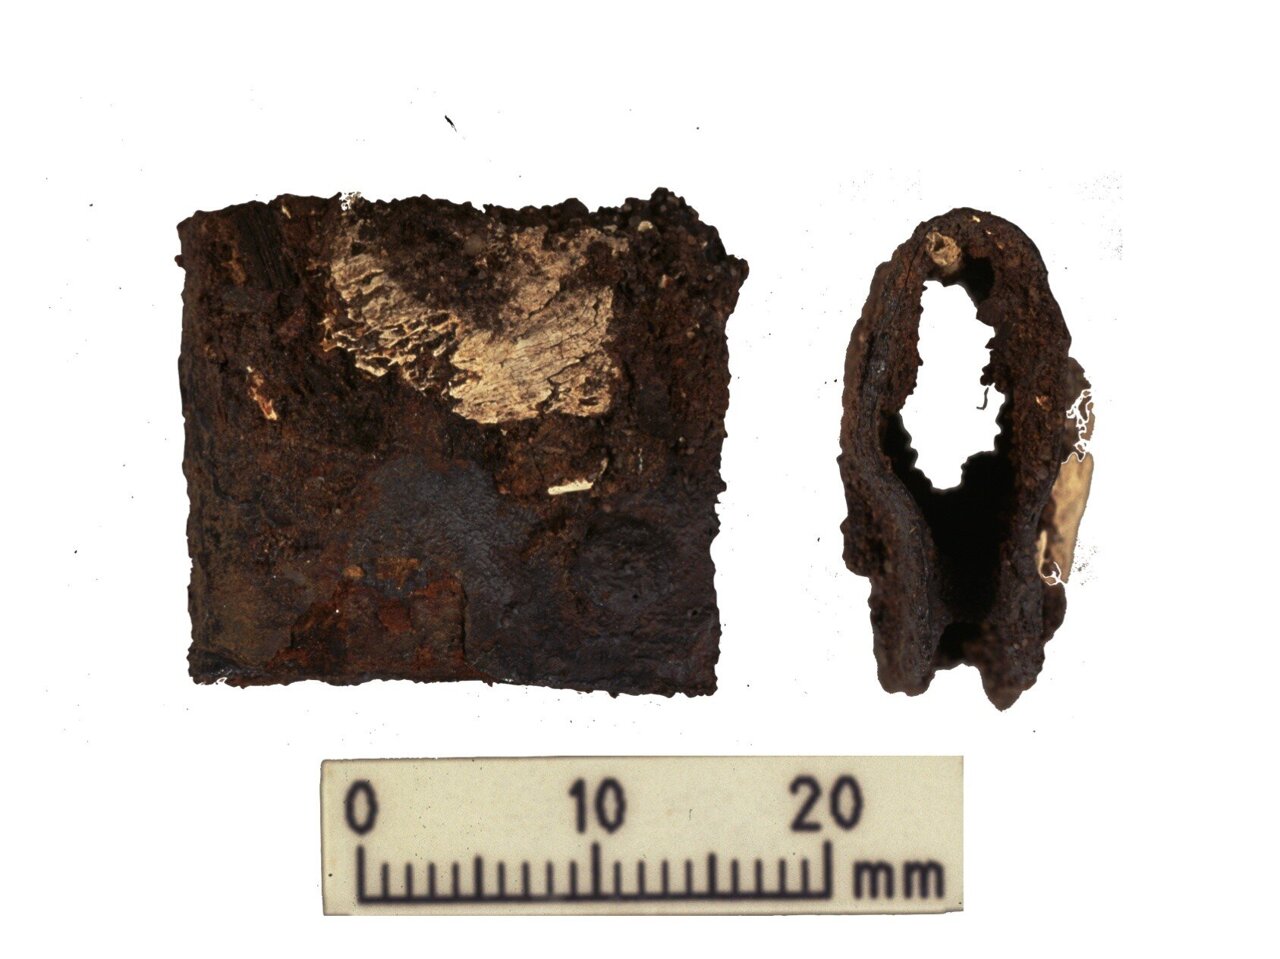 Копча са штита викиншког ратника пронађена током првобитних ископавања 1998-2000. Копча је пронађена у истом гробу као и људски и животињски остаци анализирани током последњих истраживања.